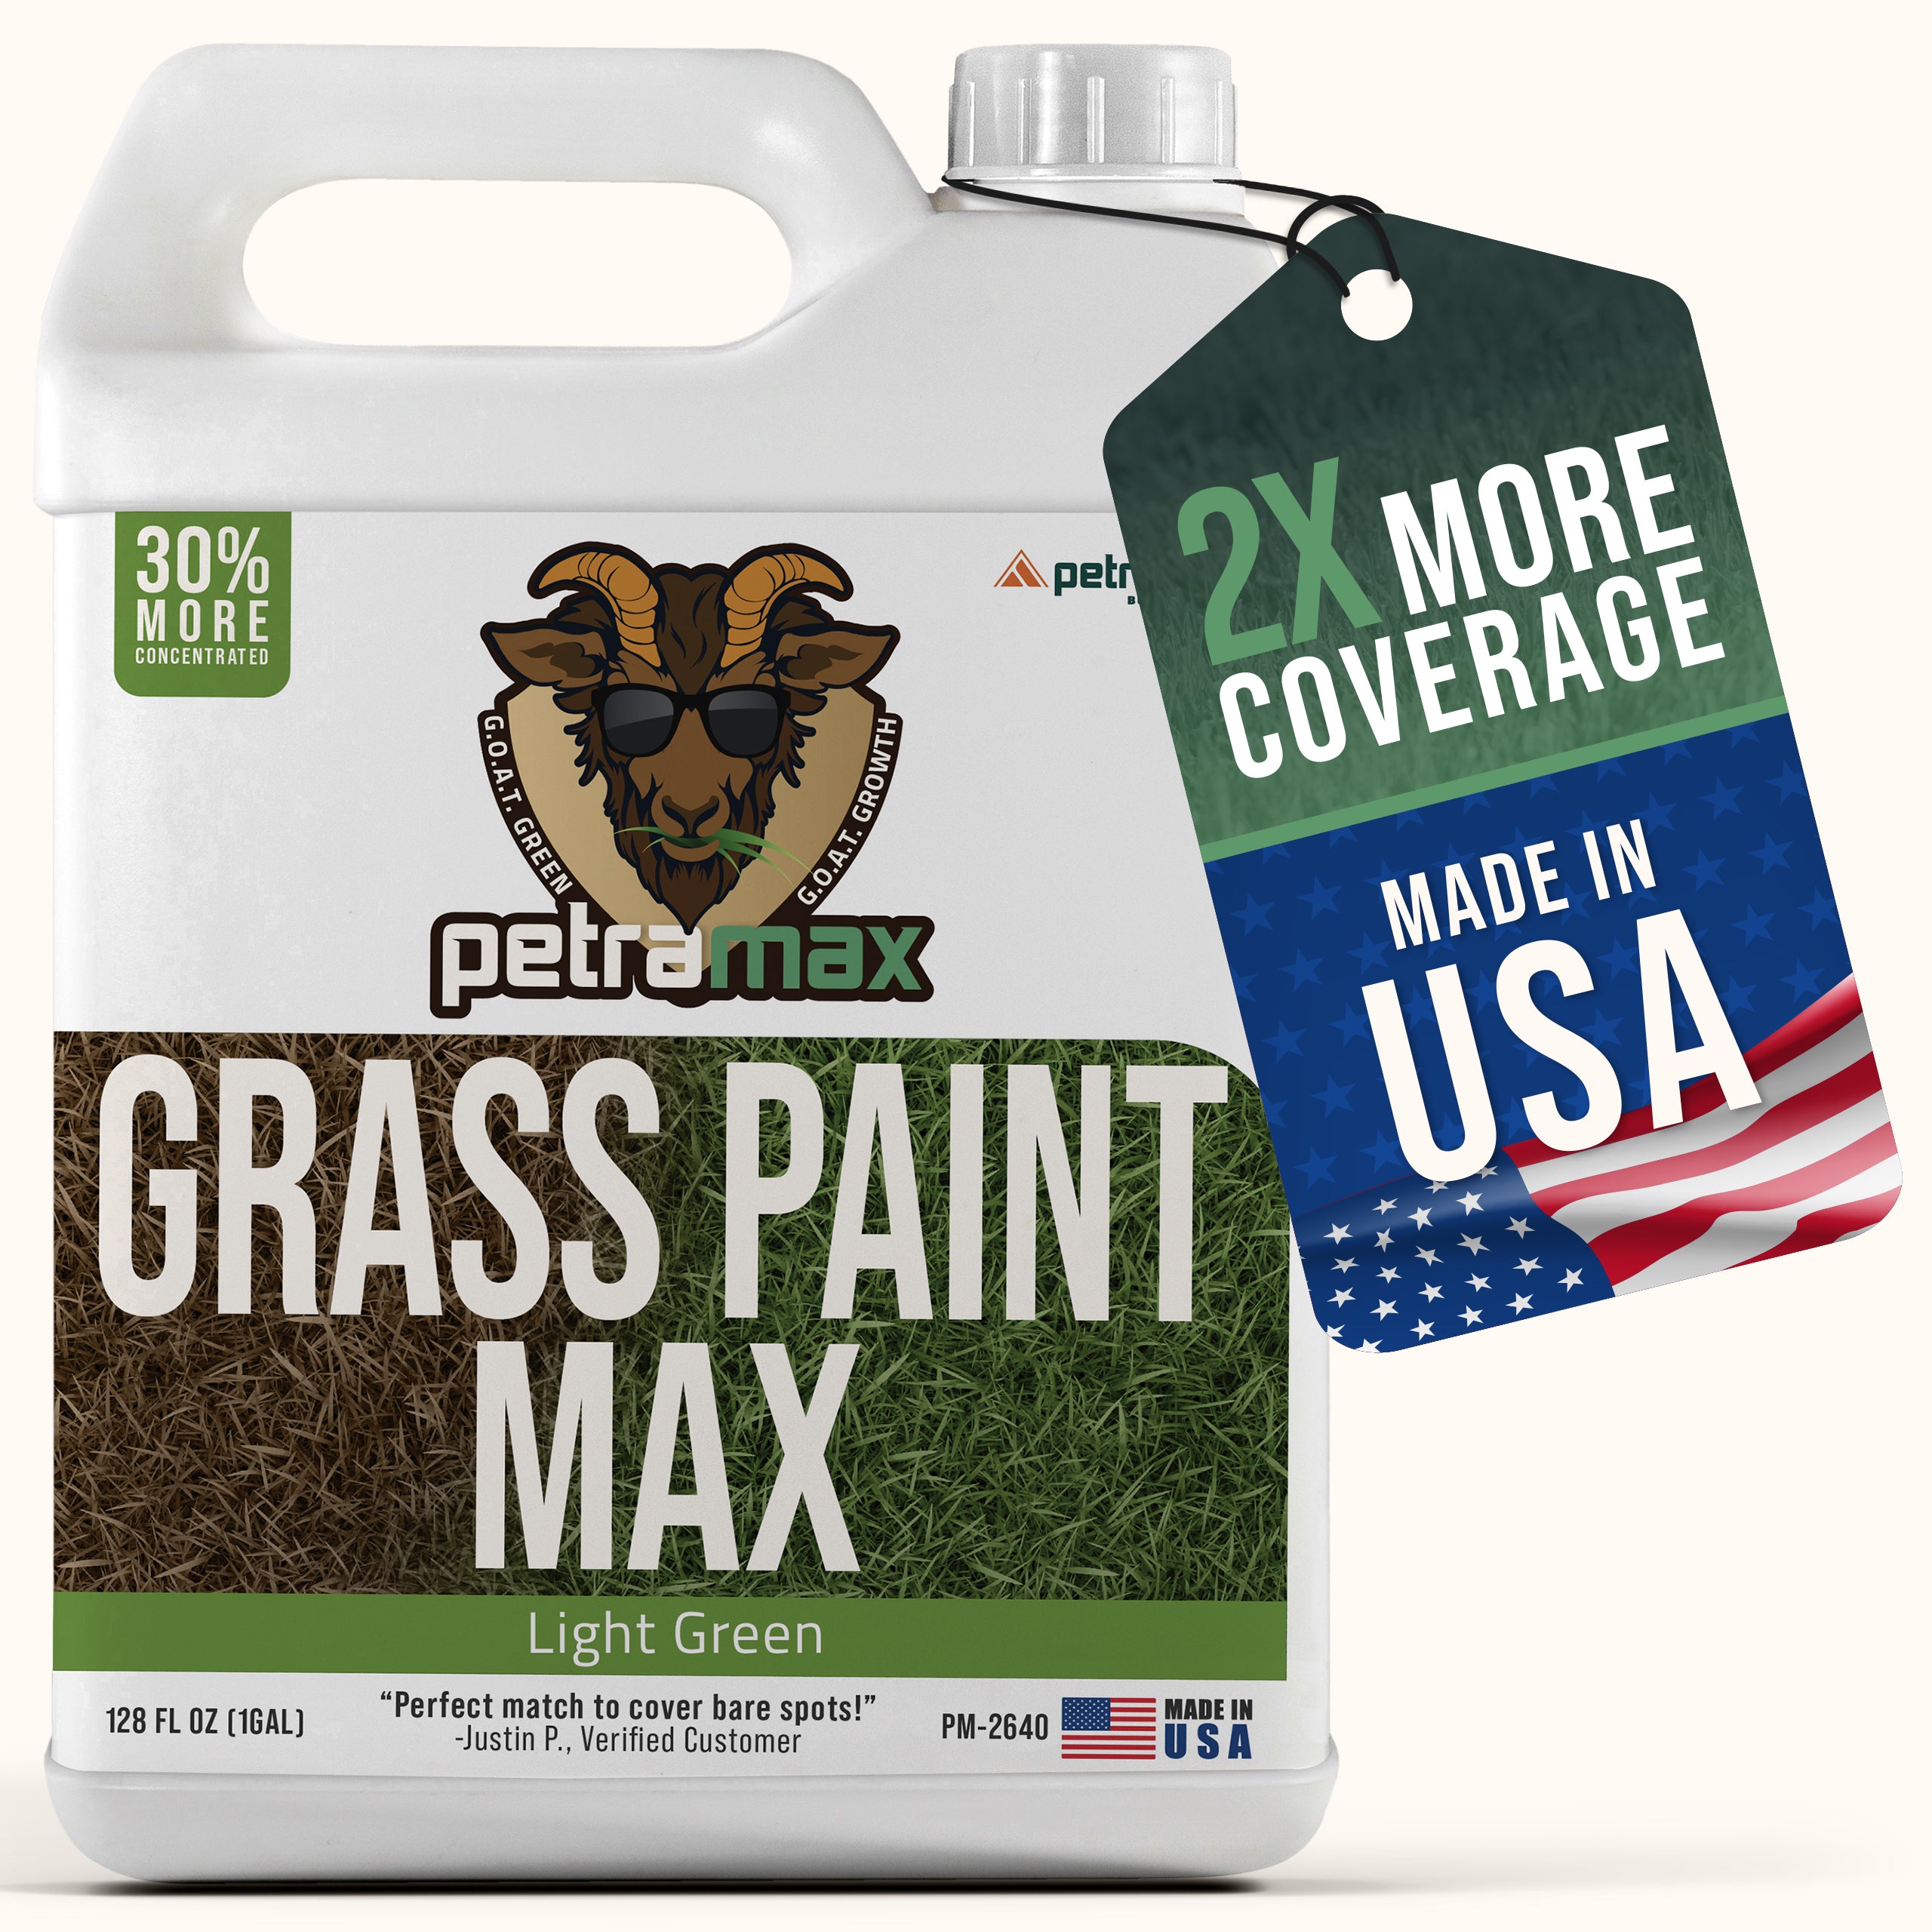 PetraMax Spring Green Grass Paint Max